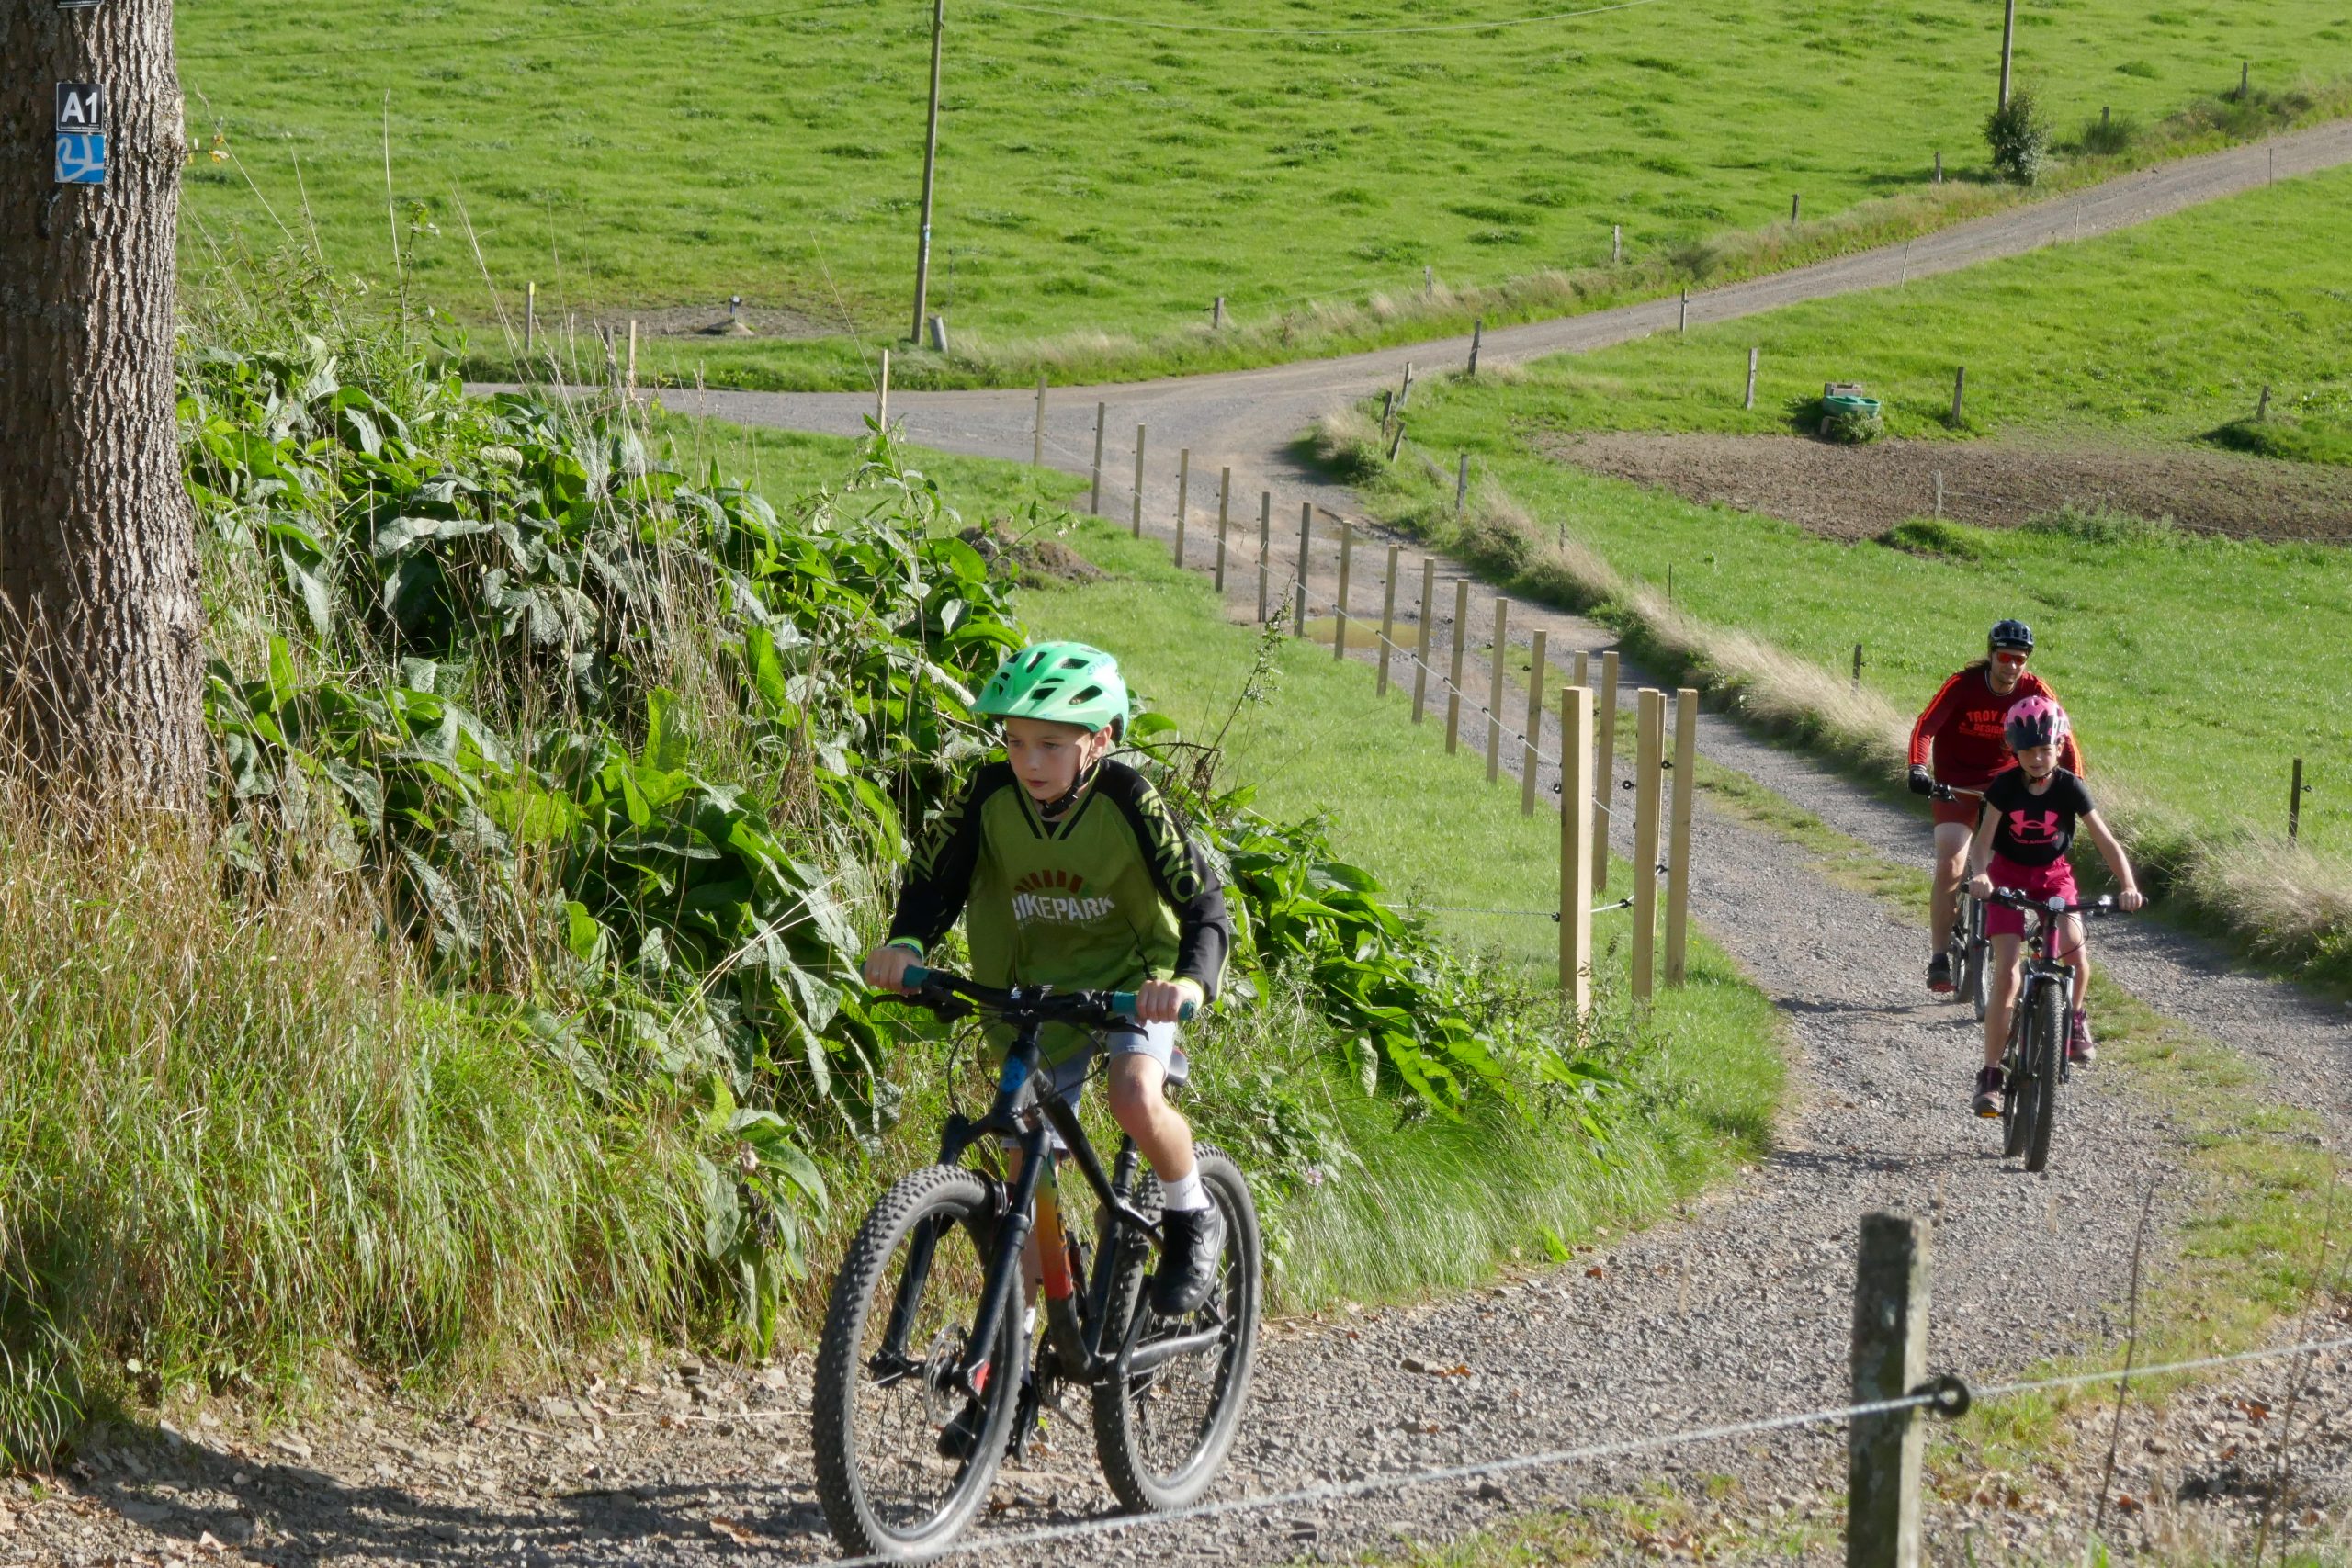 Junge auf Mountainbike mit zwei Personen auf Mountainbikes im Hintergrund